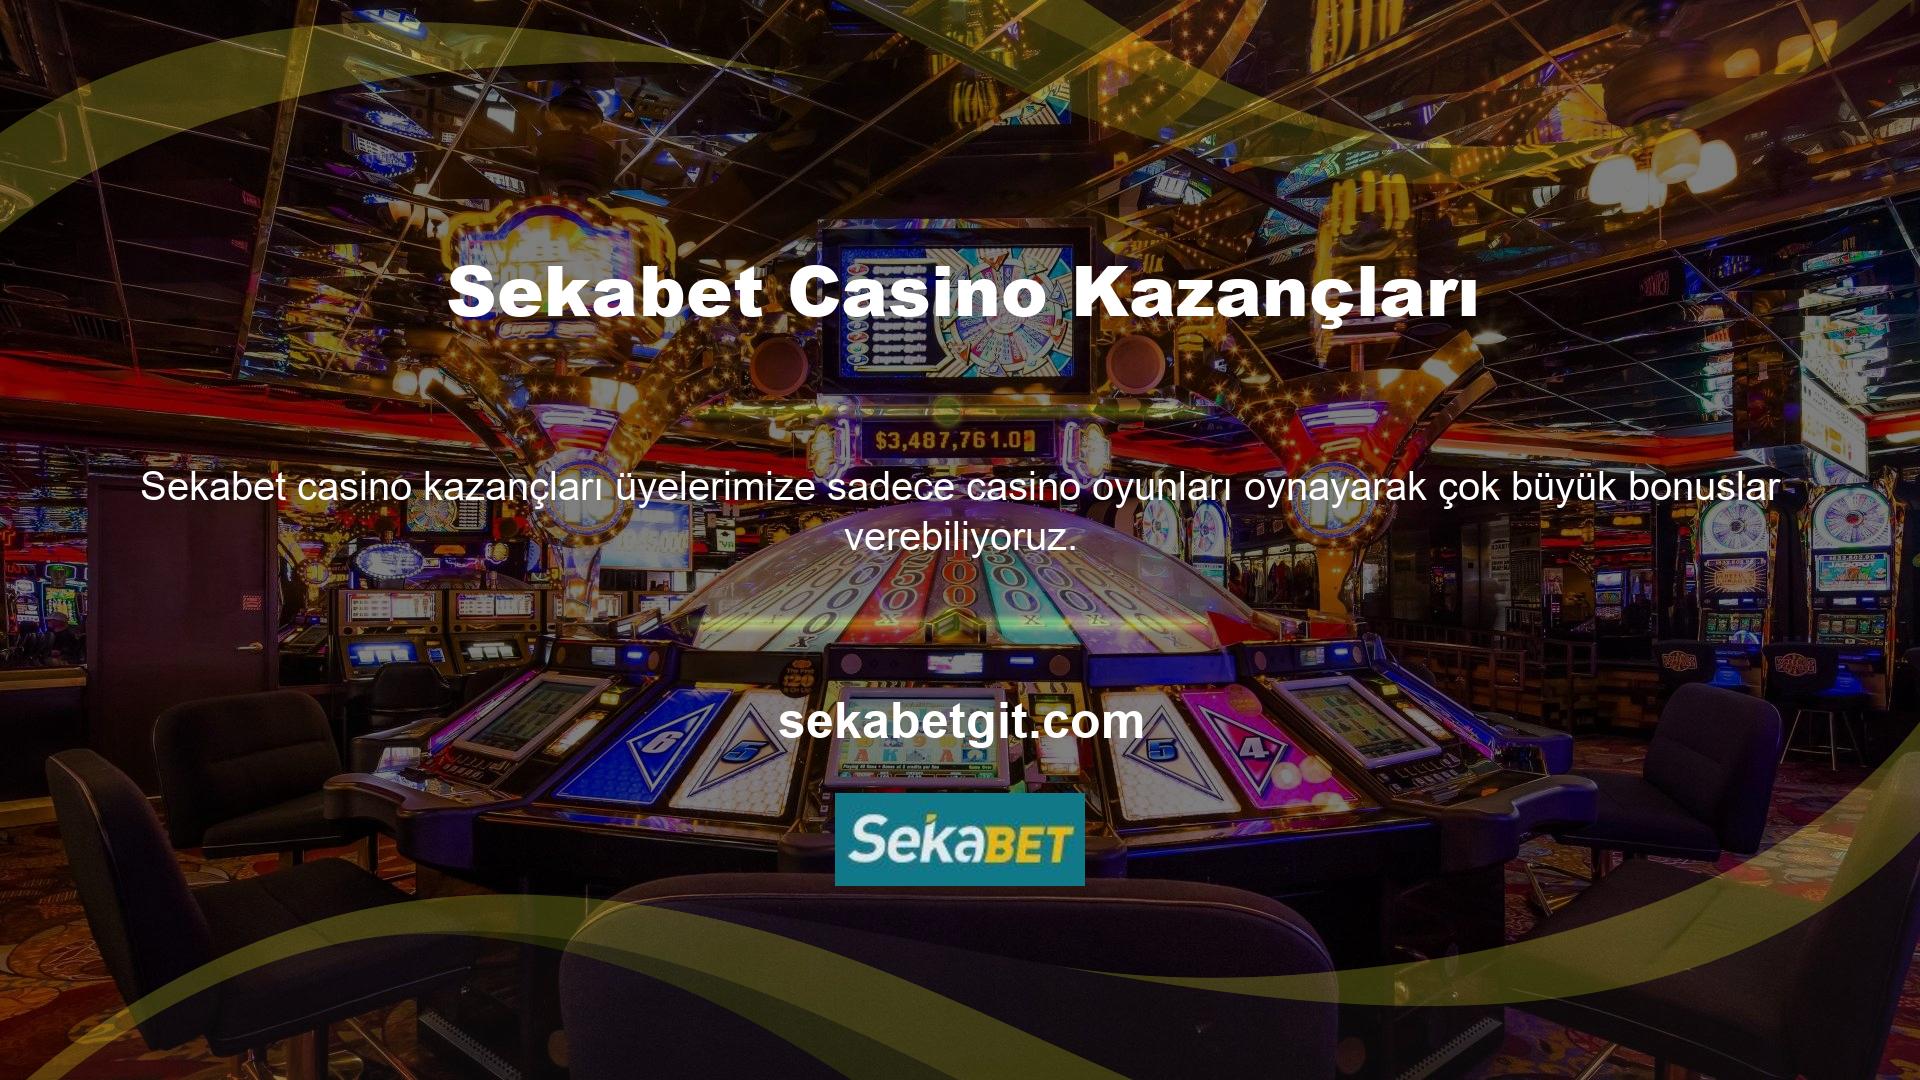 Sekabet Casinonun kullanıcılarına sunduğu casino oyun hizmetleri sayesinde her gün onlarca üye, güvenliklerini arttırmak için yüksek bakiyeler biriktirmektedir